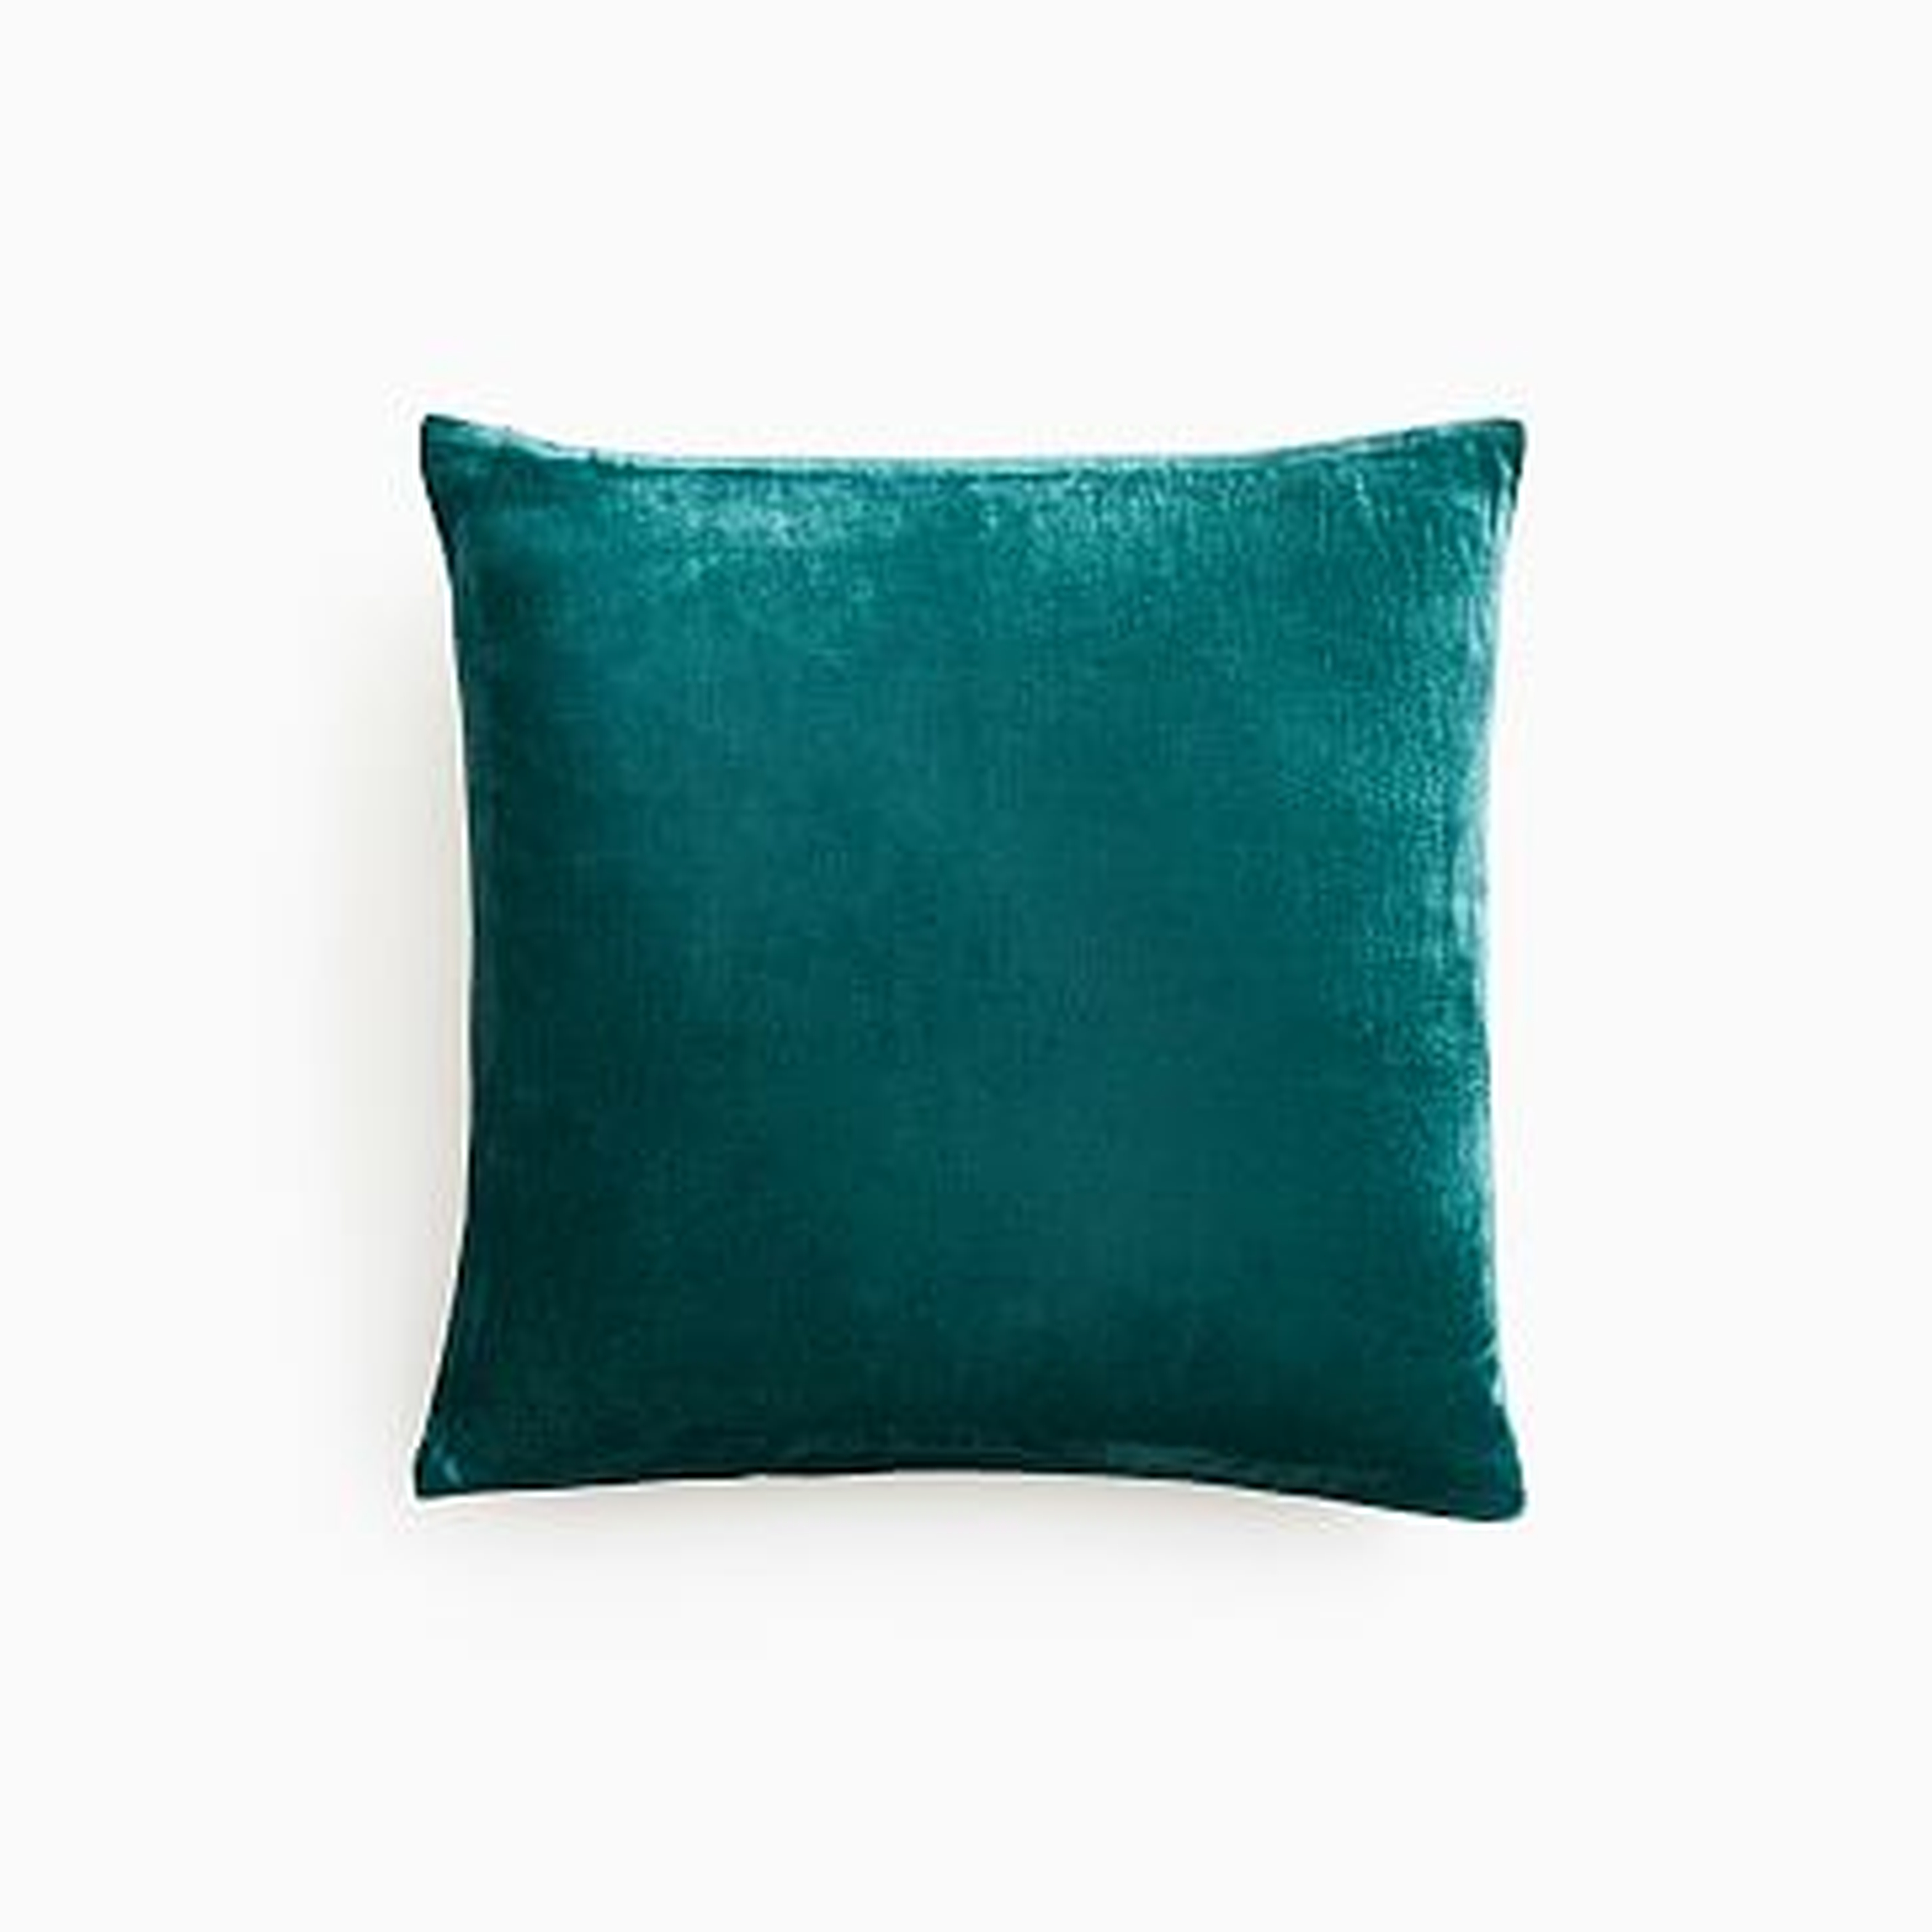 Lush Velvet Pillow Cover, 16"x16", Botanical Garden - West Elm